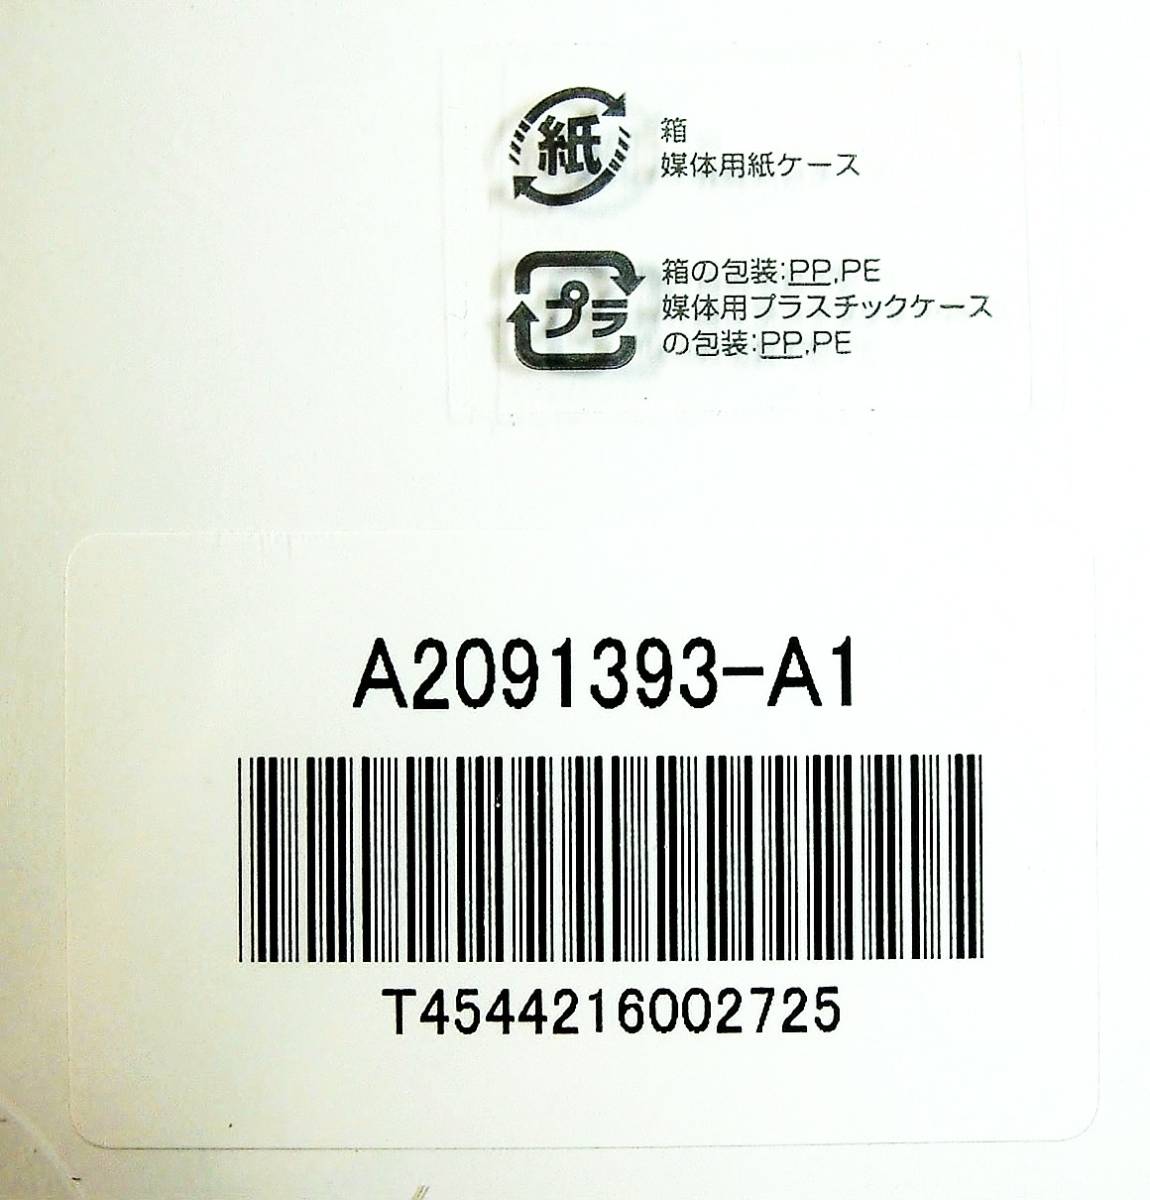 【4505】 Fujitsu  GKitTaglib Scheduler v1.2  не вскрытый  товар  JSP custom  бирка  ...  расписание  фото    ...  пистолет  ... 4544216002725 